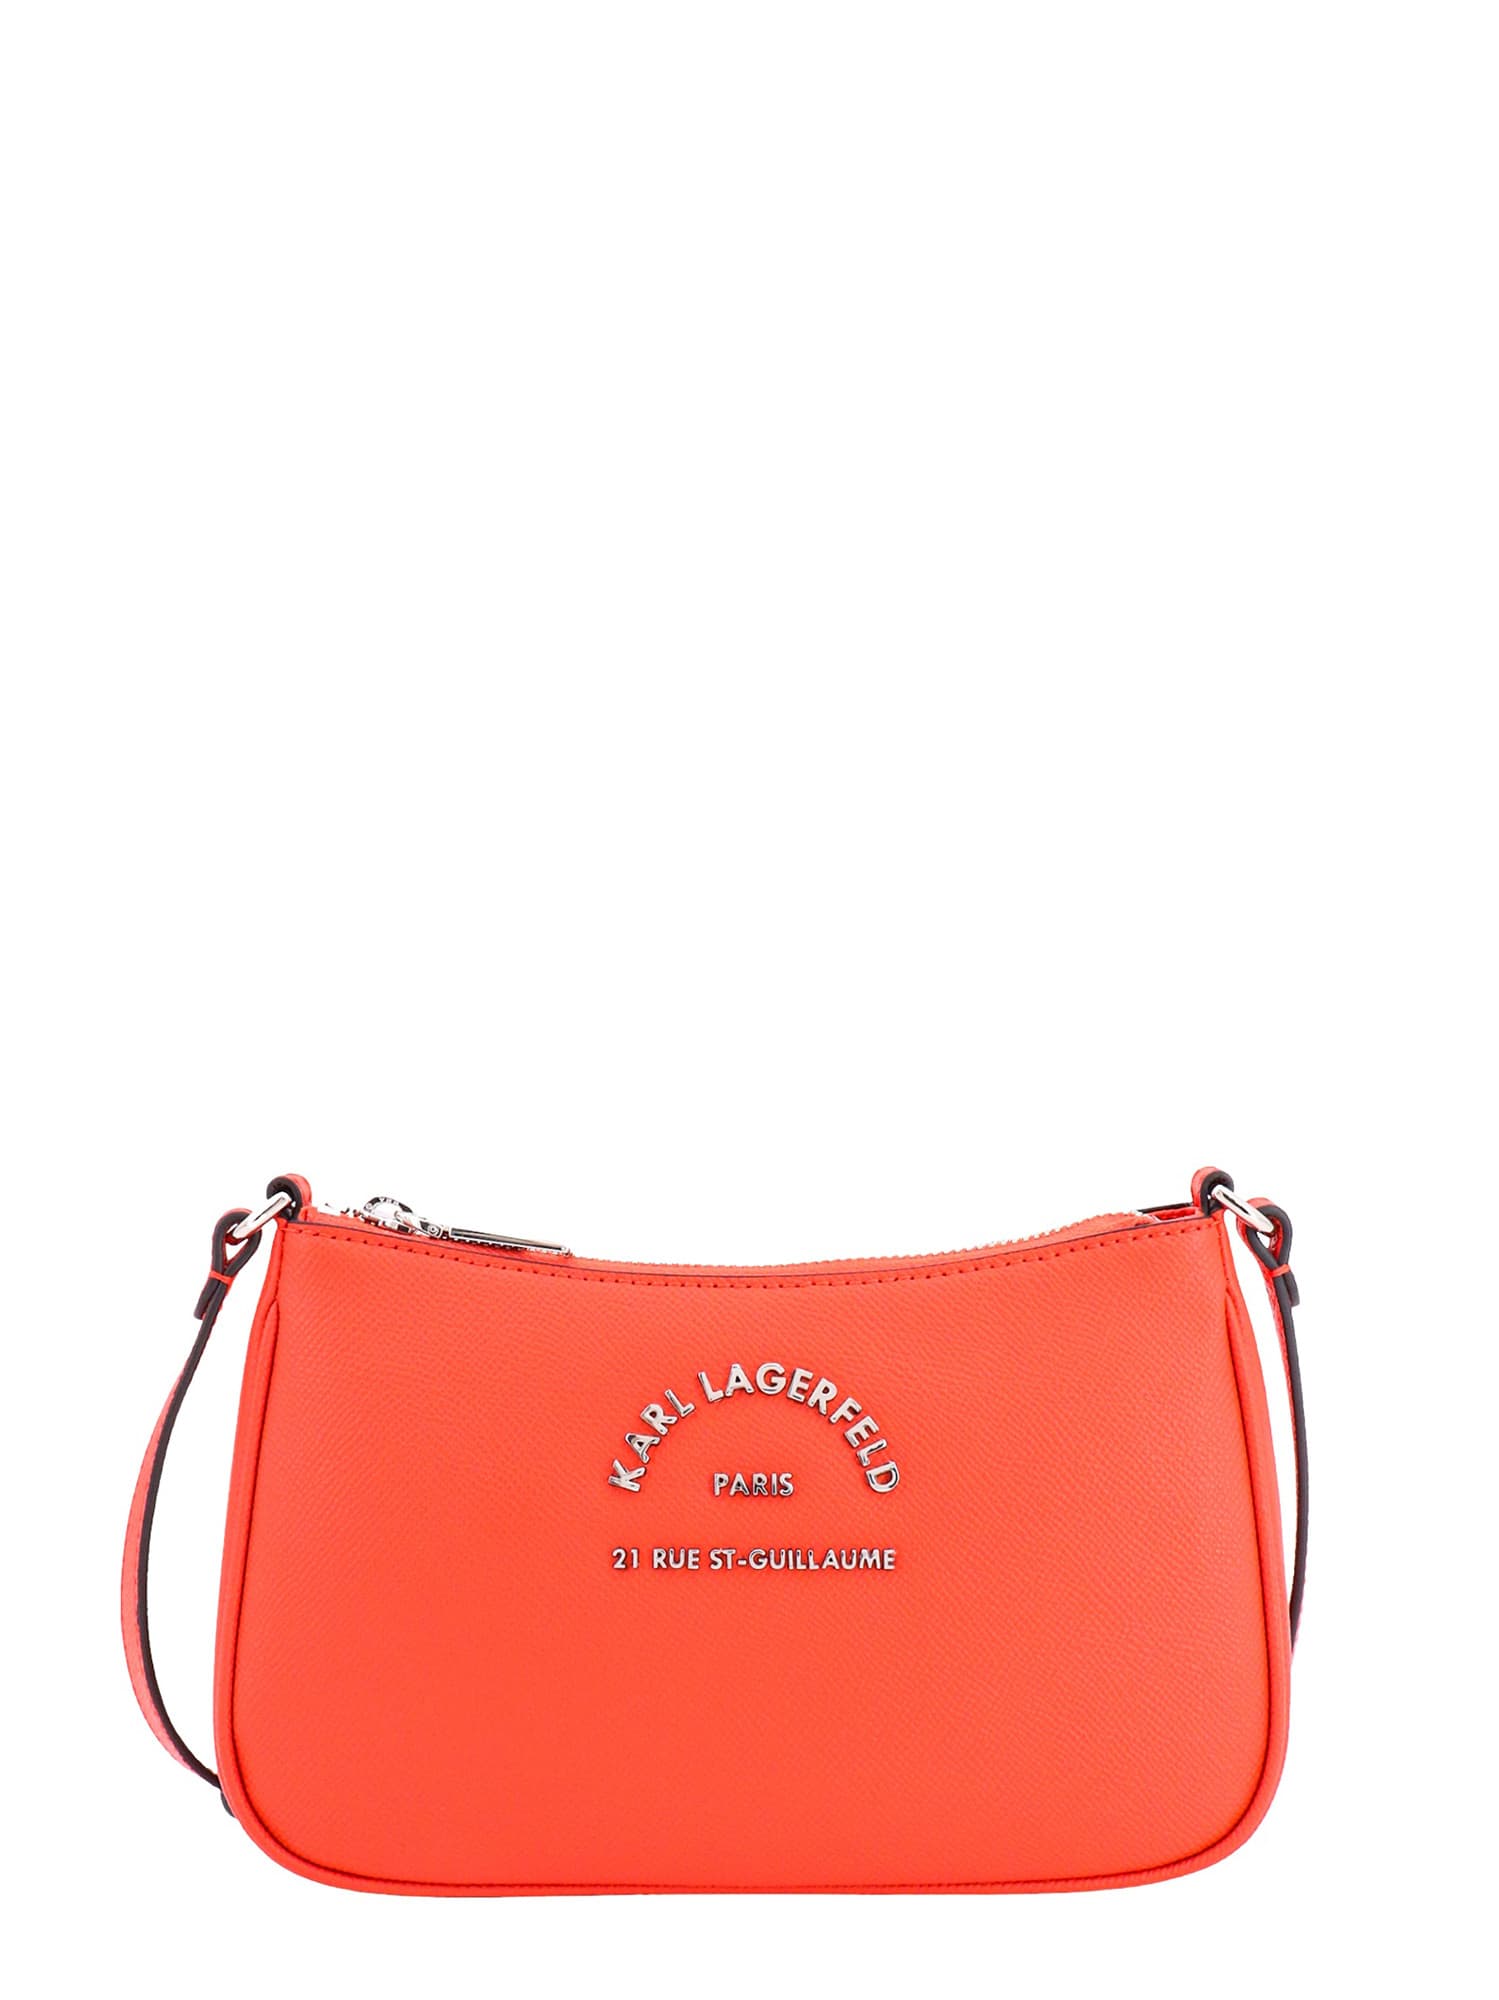 Shop Karl Lagerfeld Shoulder Bag In Orange